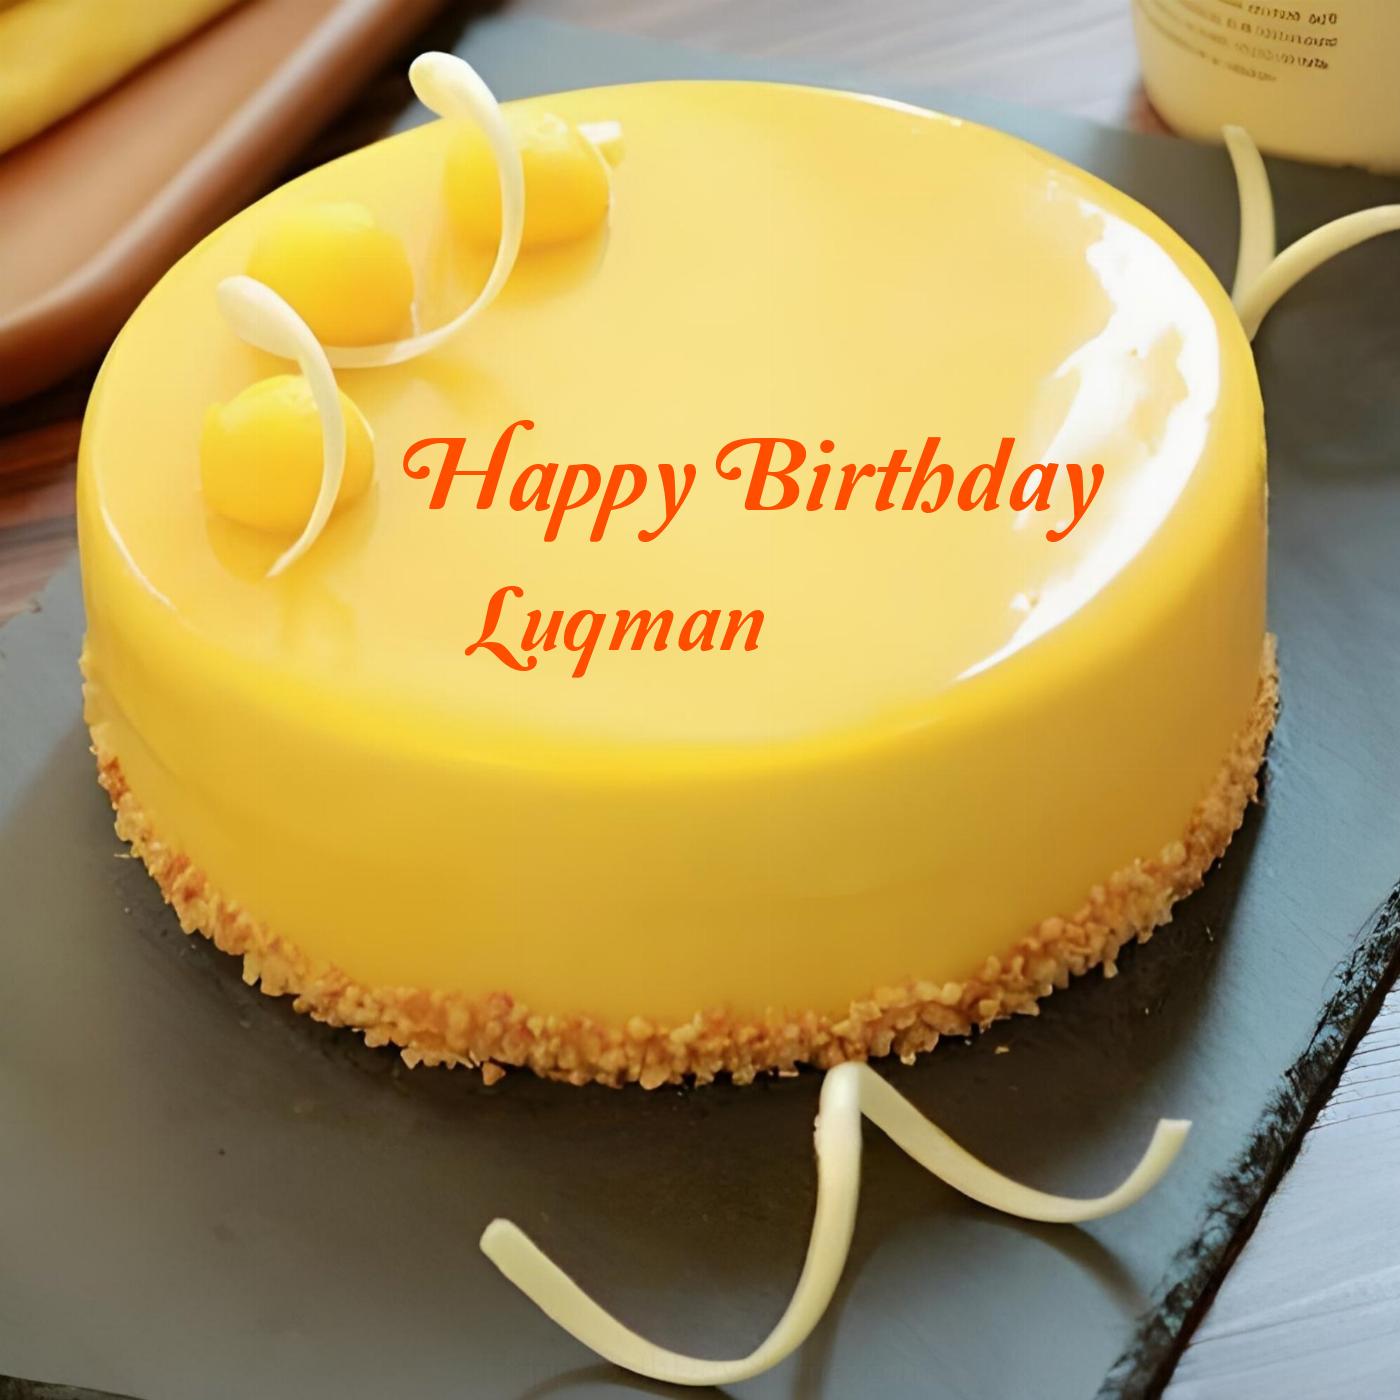 Happy Birthday Luqman Beautiful Yellow Cake